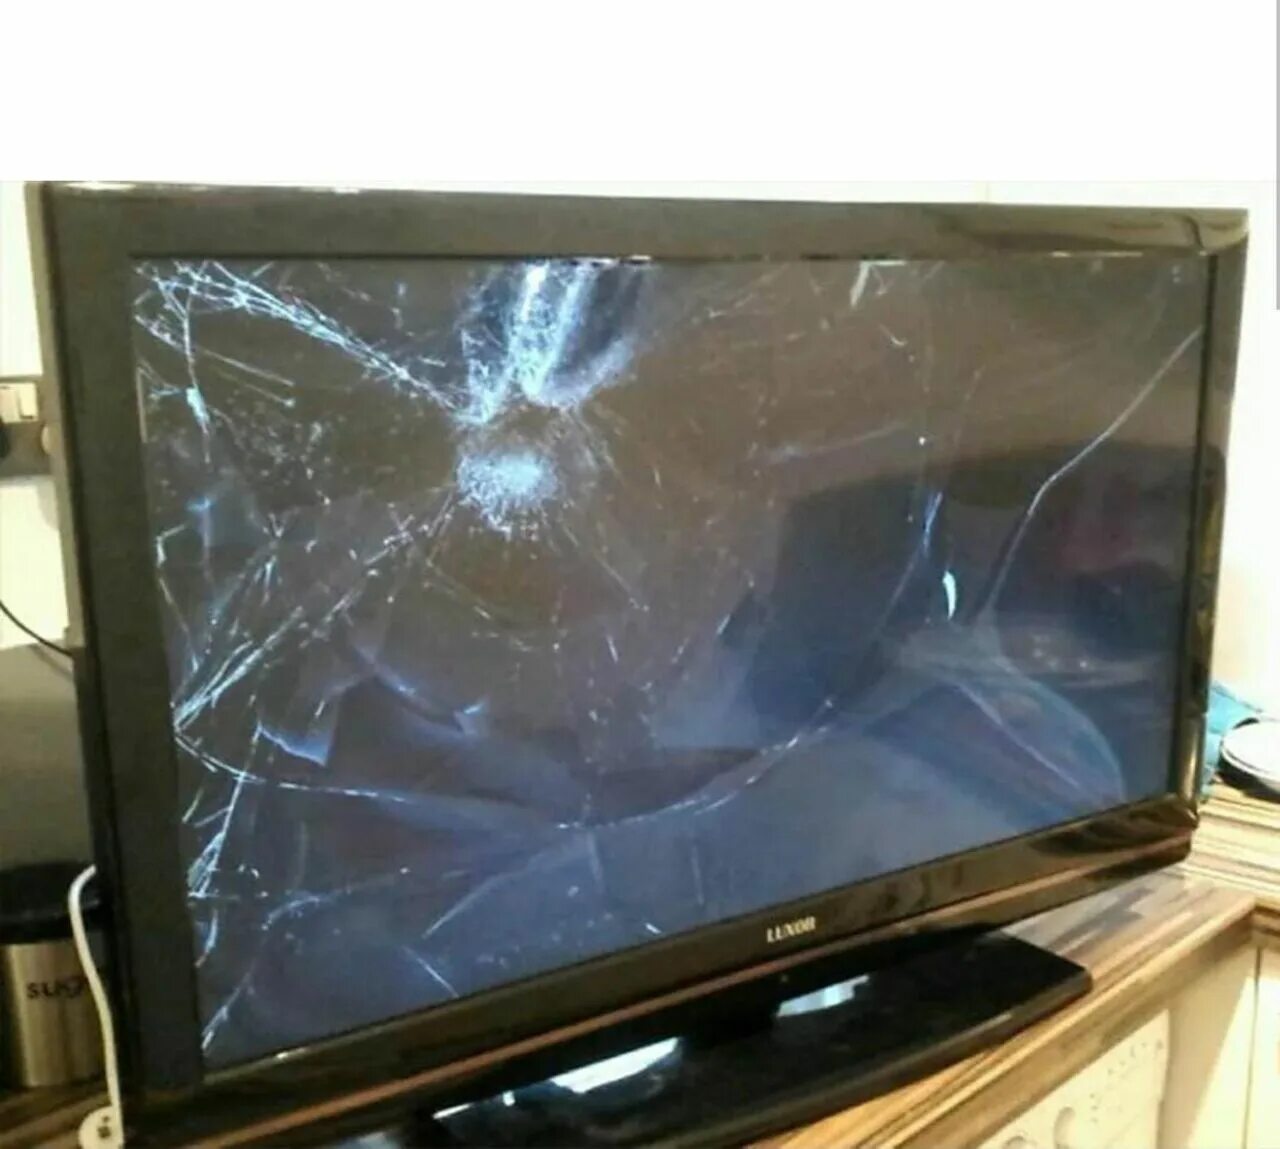 Ребенок разбил телевизор. Разбитый телевизор Филипс. Сломанный плазменный телевизор. Разбитый монитор телевизора. Телевизор с разбитым экраном.